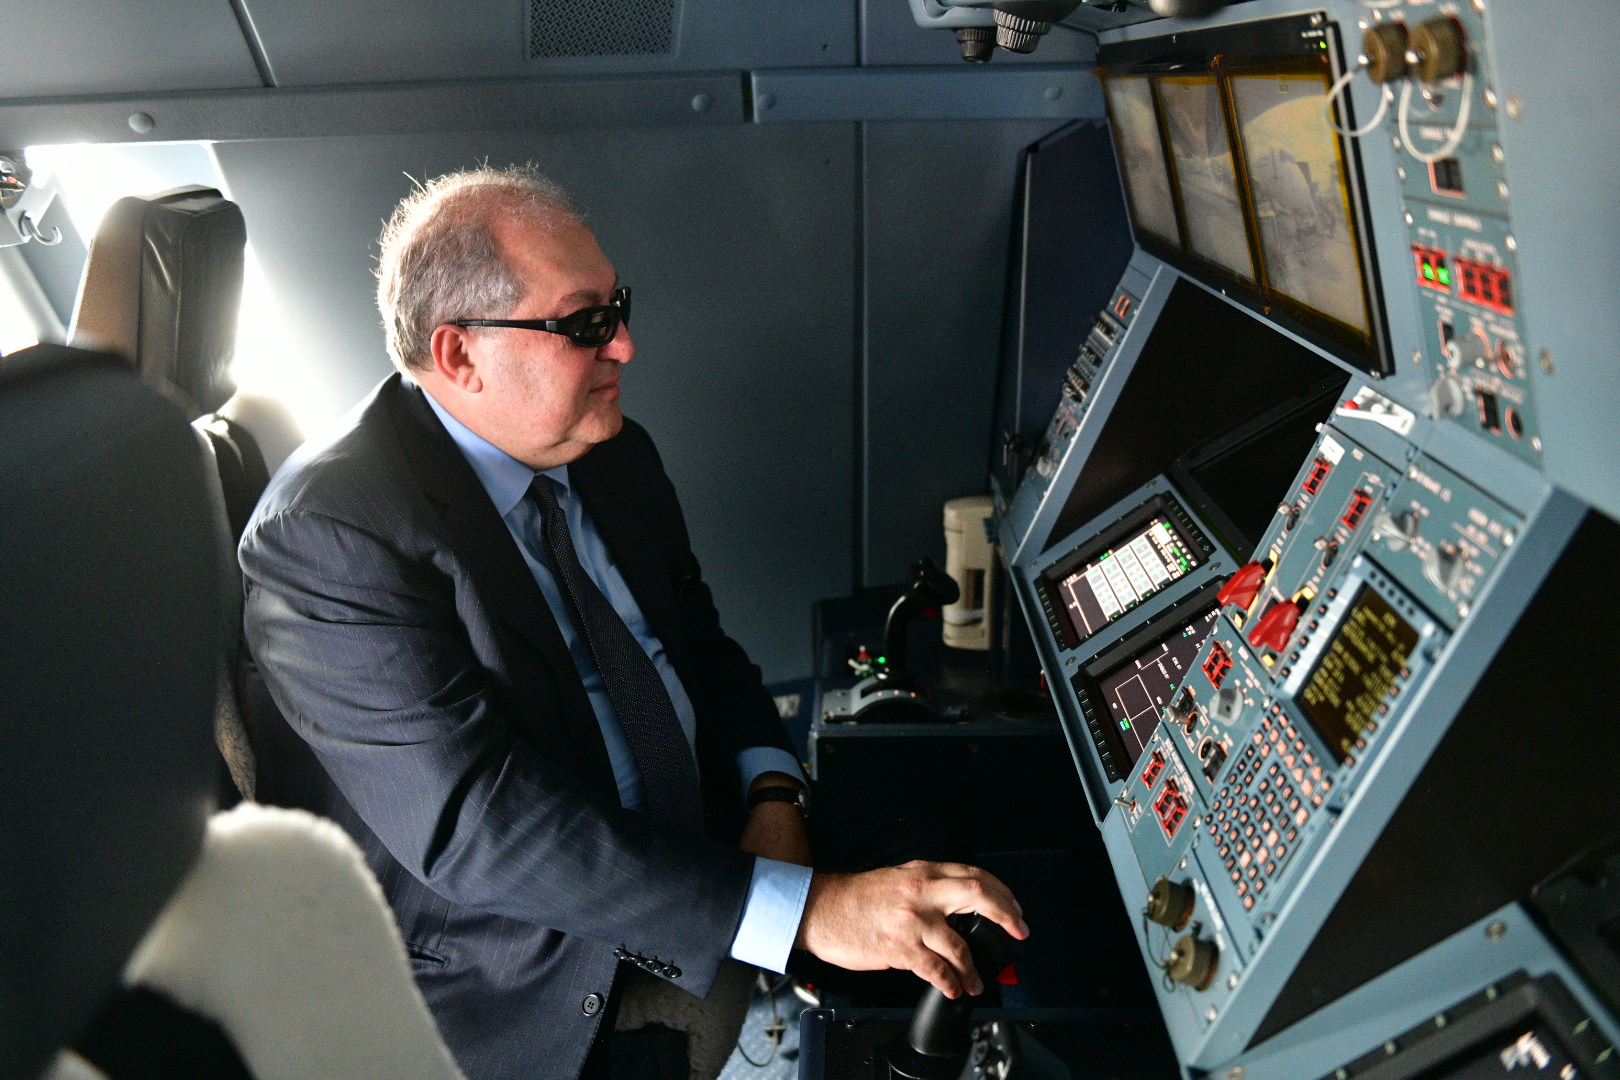 Նախագահ Արմեն Սարգսյանն այցելել է Լը Բուրժեում անցկացվող Փարիզի միջազգային ավիացիոն ցուցահանդես